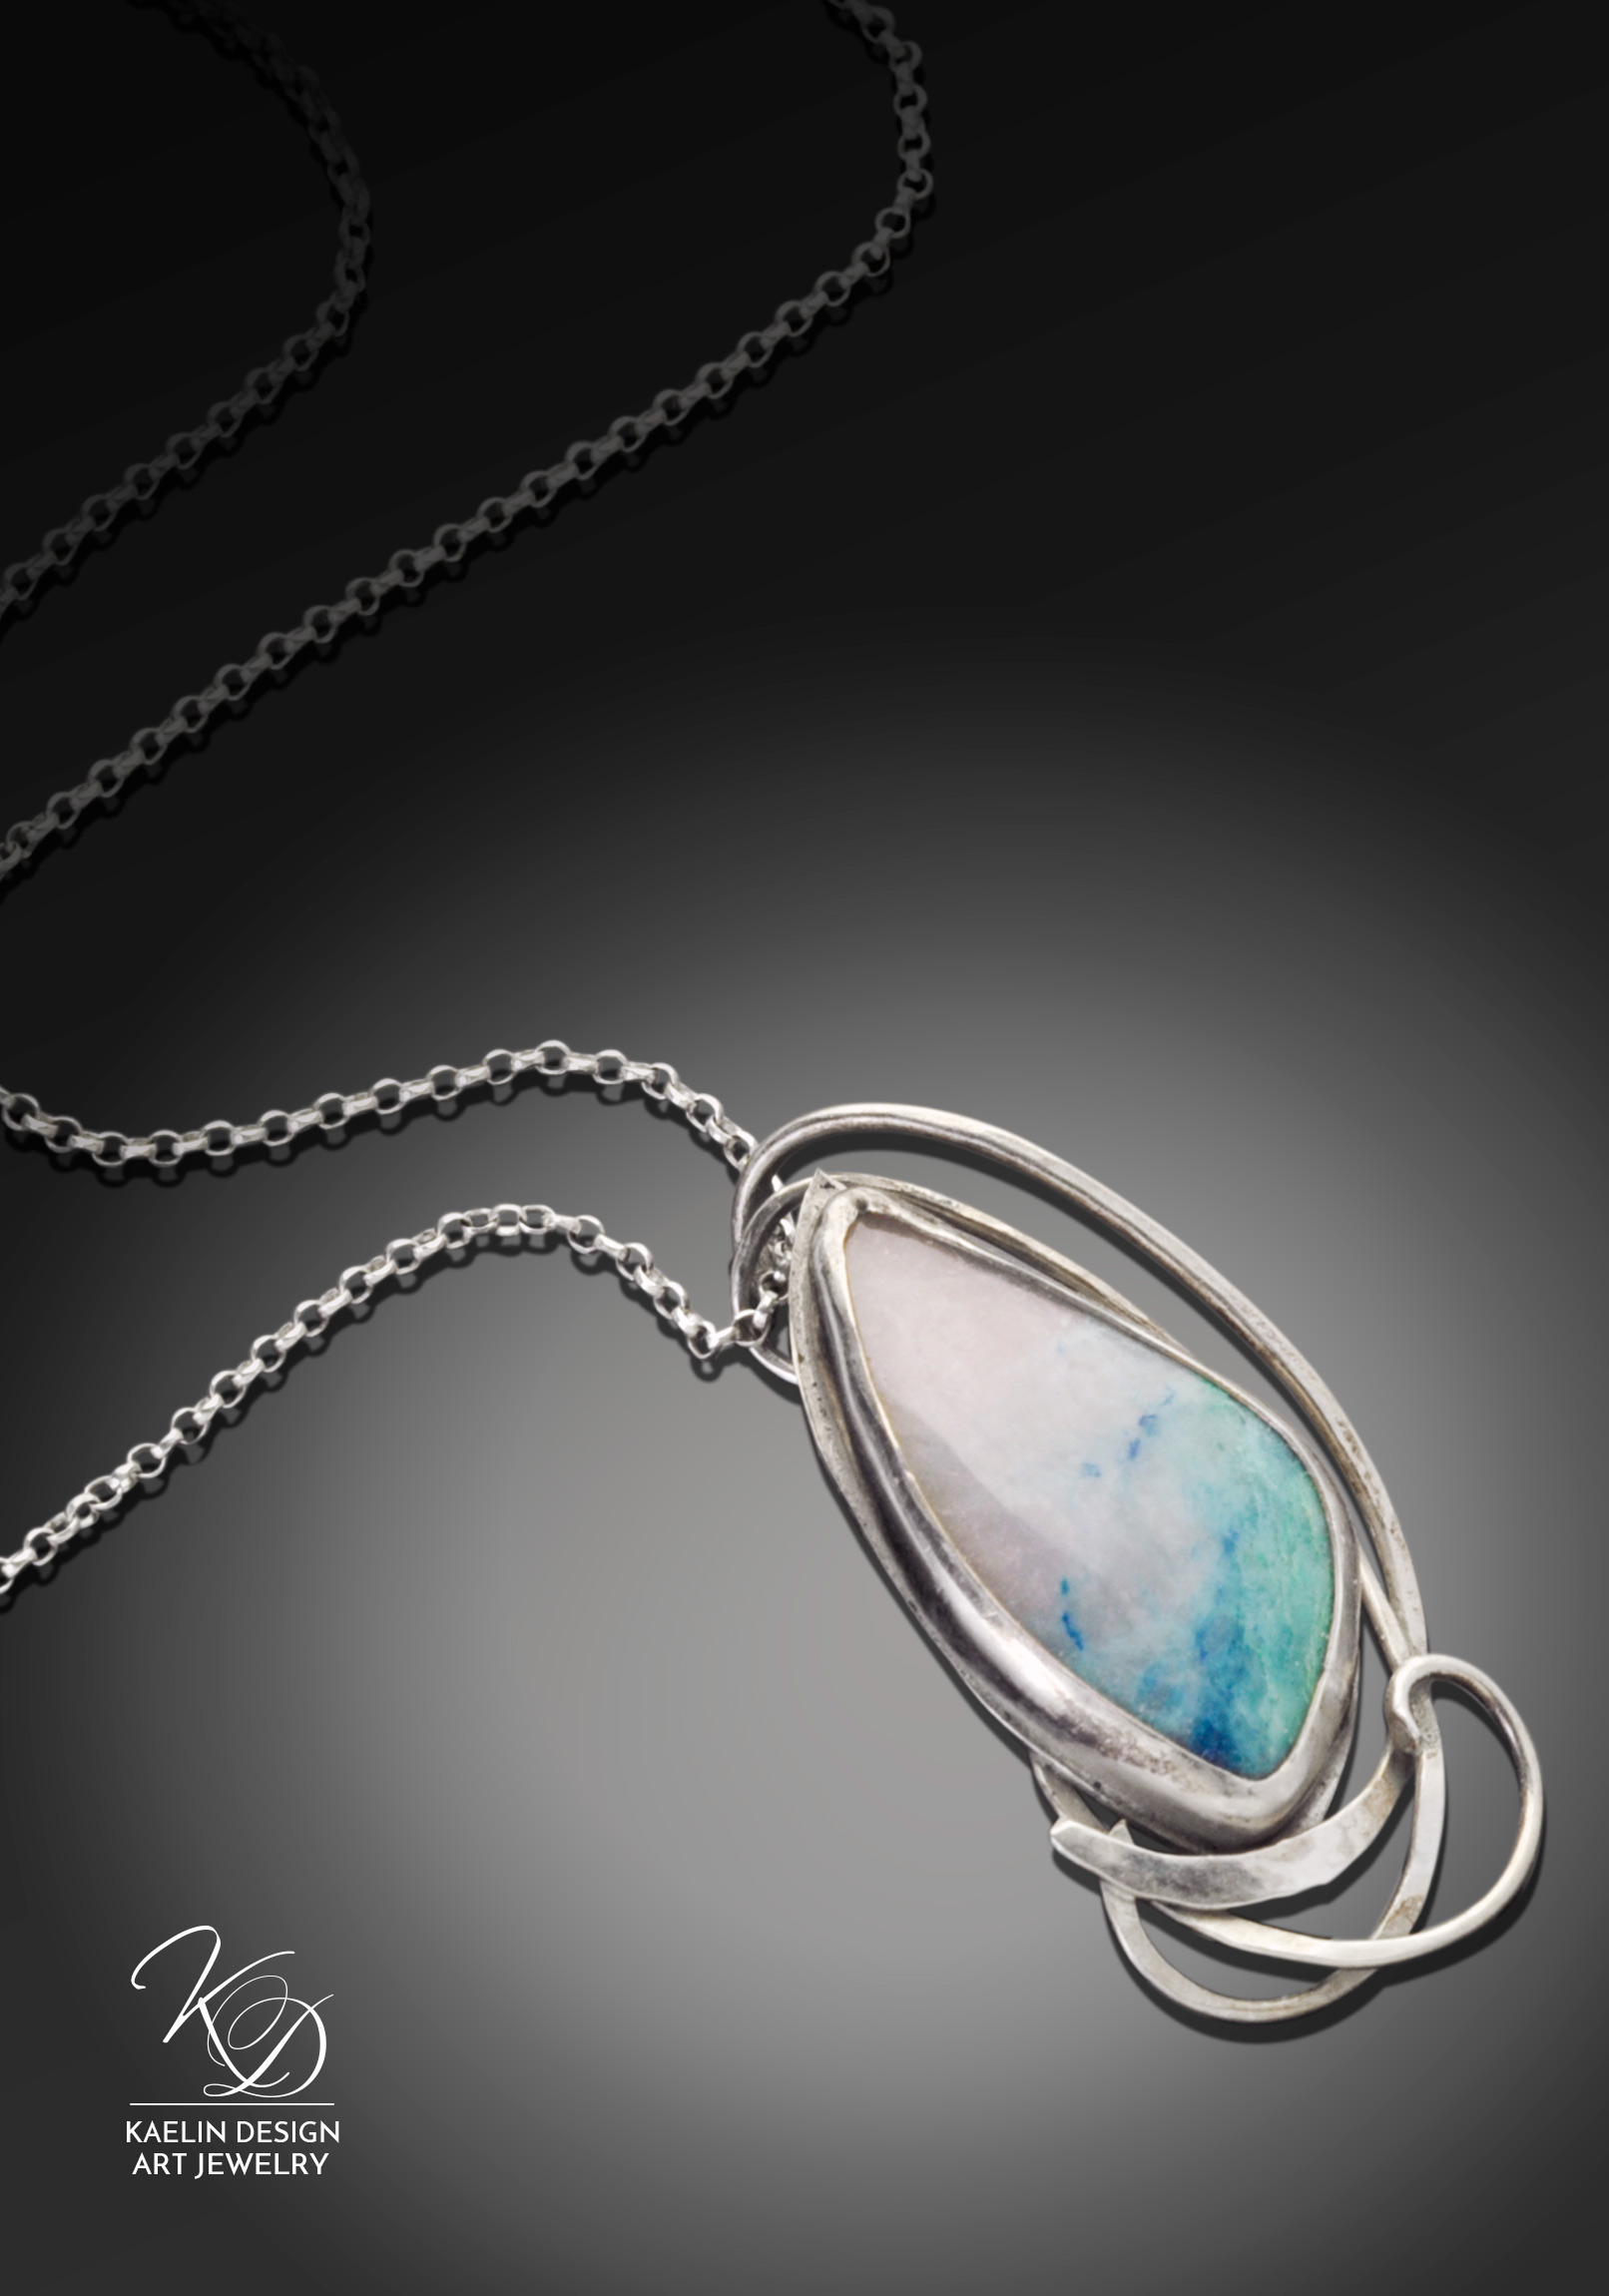 Ocean's Foam Chrysocolla Art Jewelry Pendant by Kaelin Design